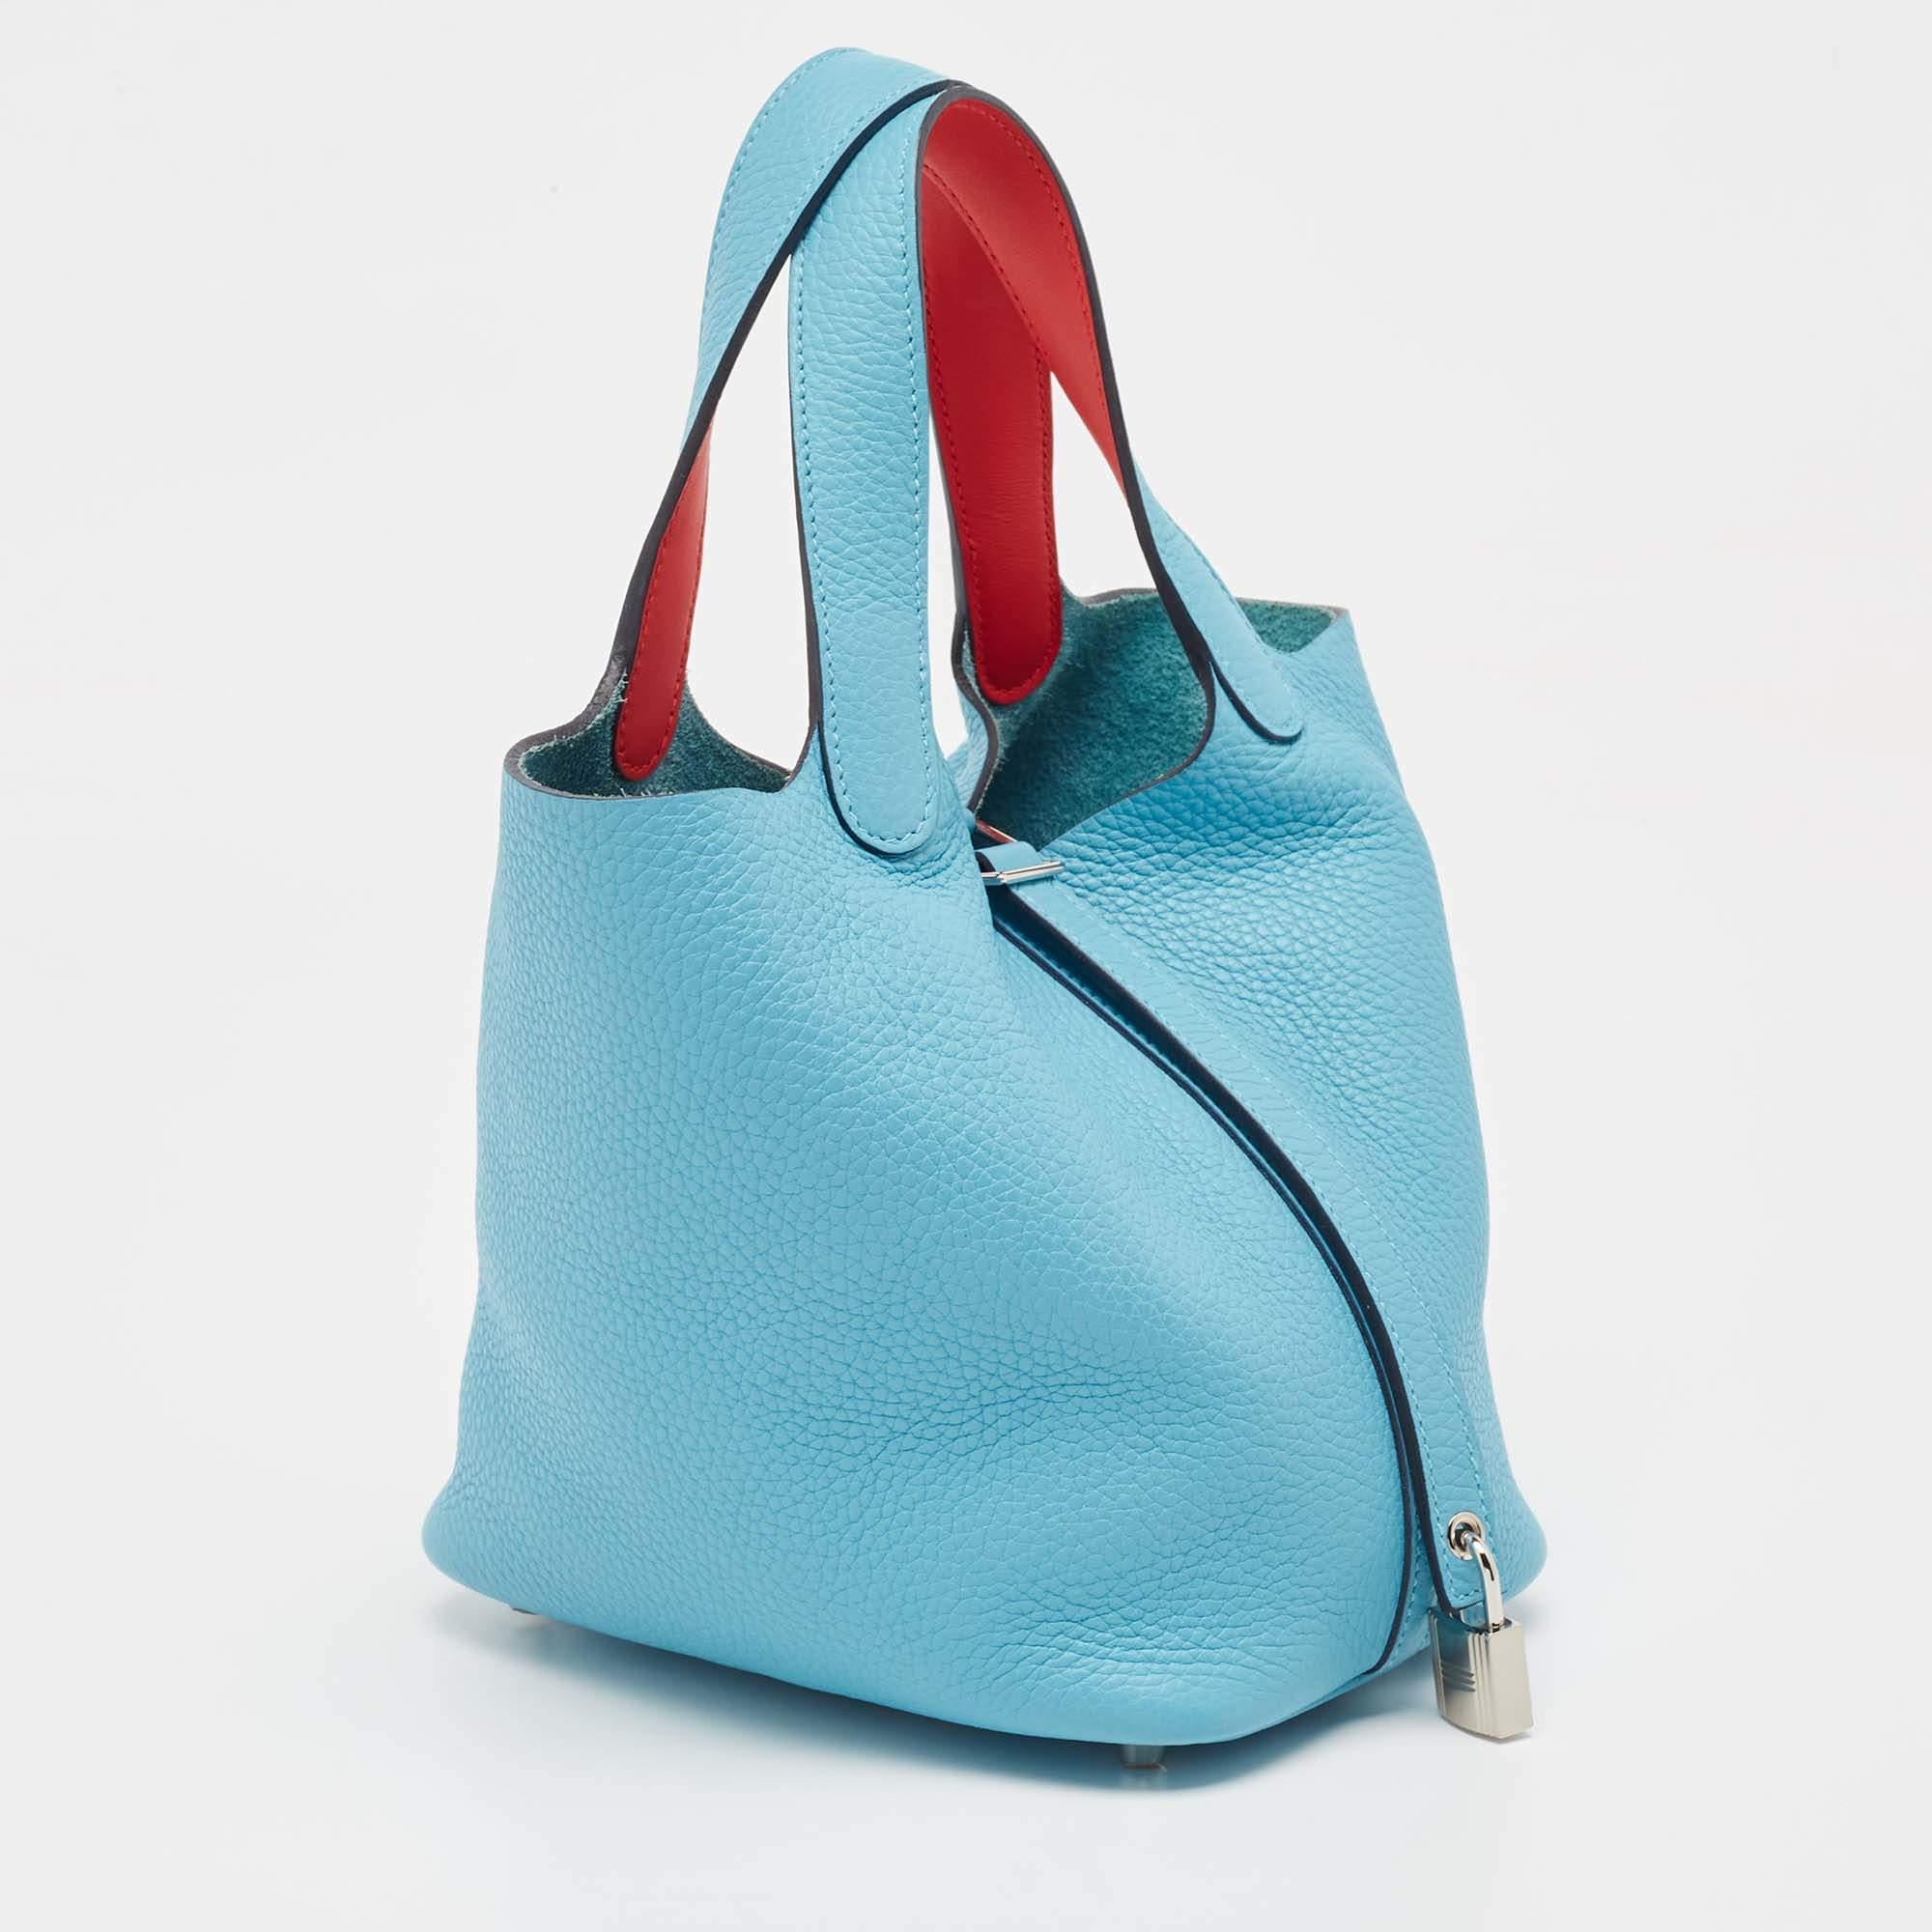 Hermes Bleu du Nord/Rouge de Coeur Taurillon  Leather Picotin Lock 18  Bag In Good Condition For Sale In Dubai, Al Qouz 2